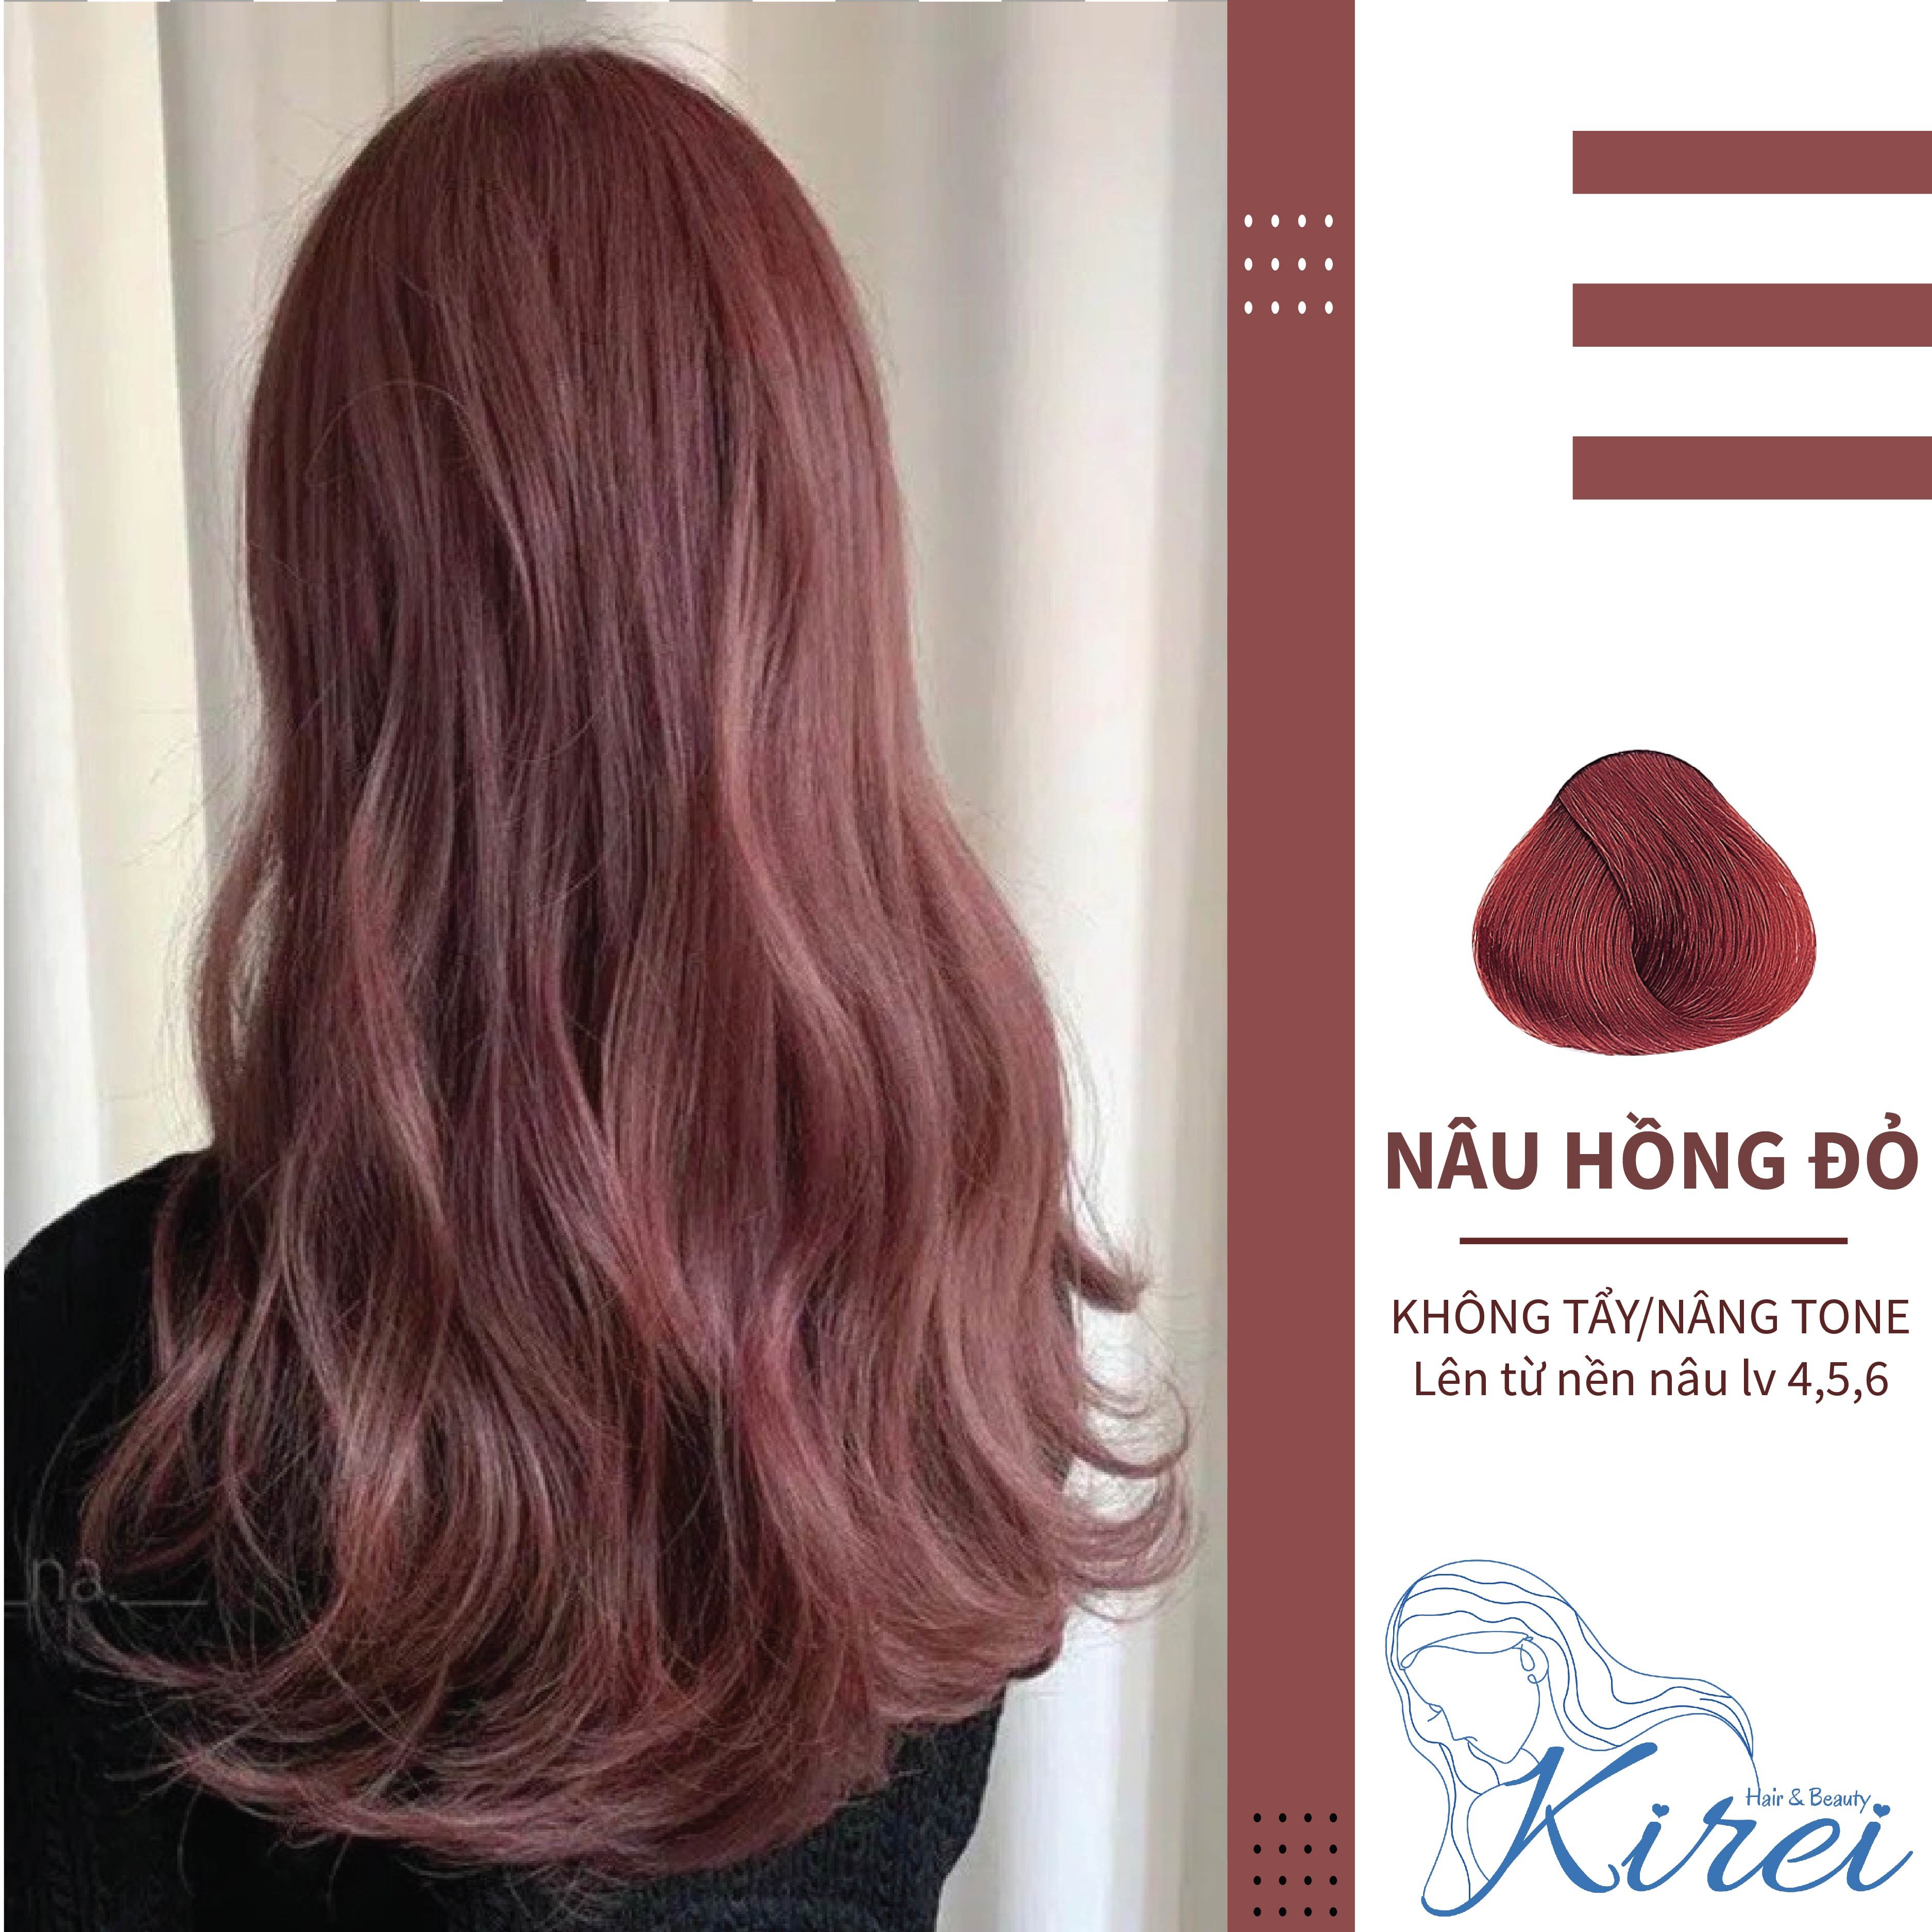 Màu tóc nâu hồng đỏ sẽ giúp bạn trông thật sang trọng và quyến rũ. Thuốc nhuộm tóc màu NÂU HỒNG ĐỎ sẽ giúp bạn tạo nên điểm nhấn độc đáo và thu hút mọi ánh nhìn từ xung quanh.